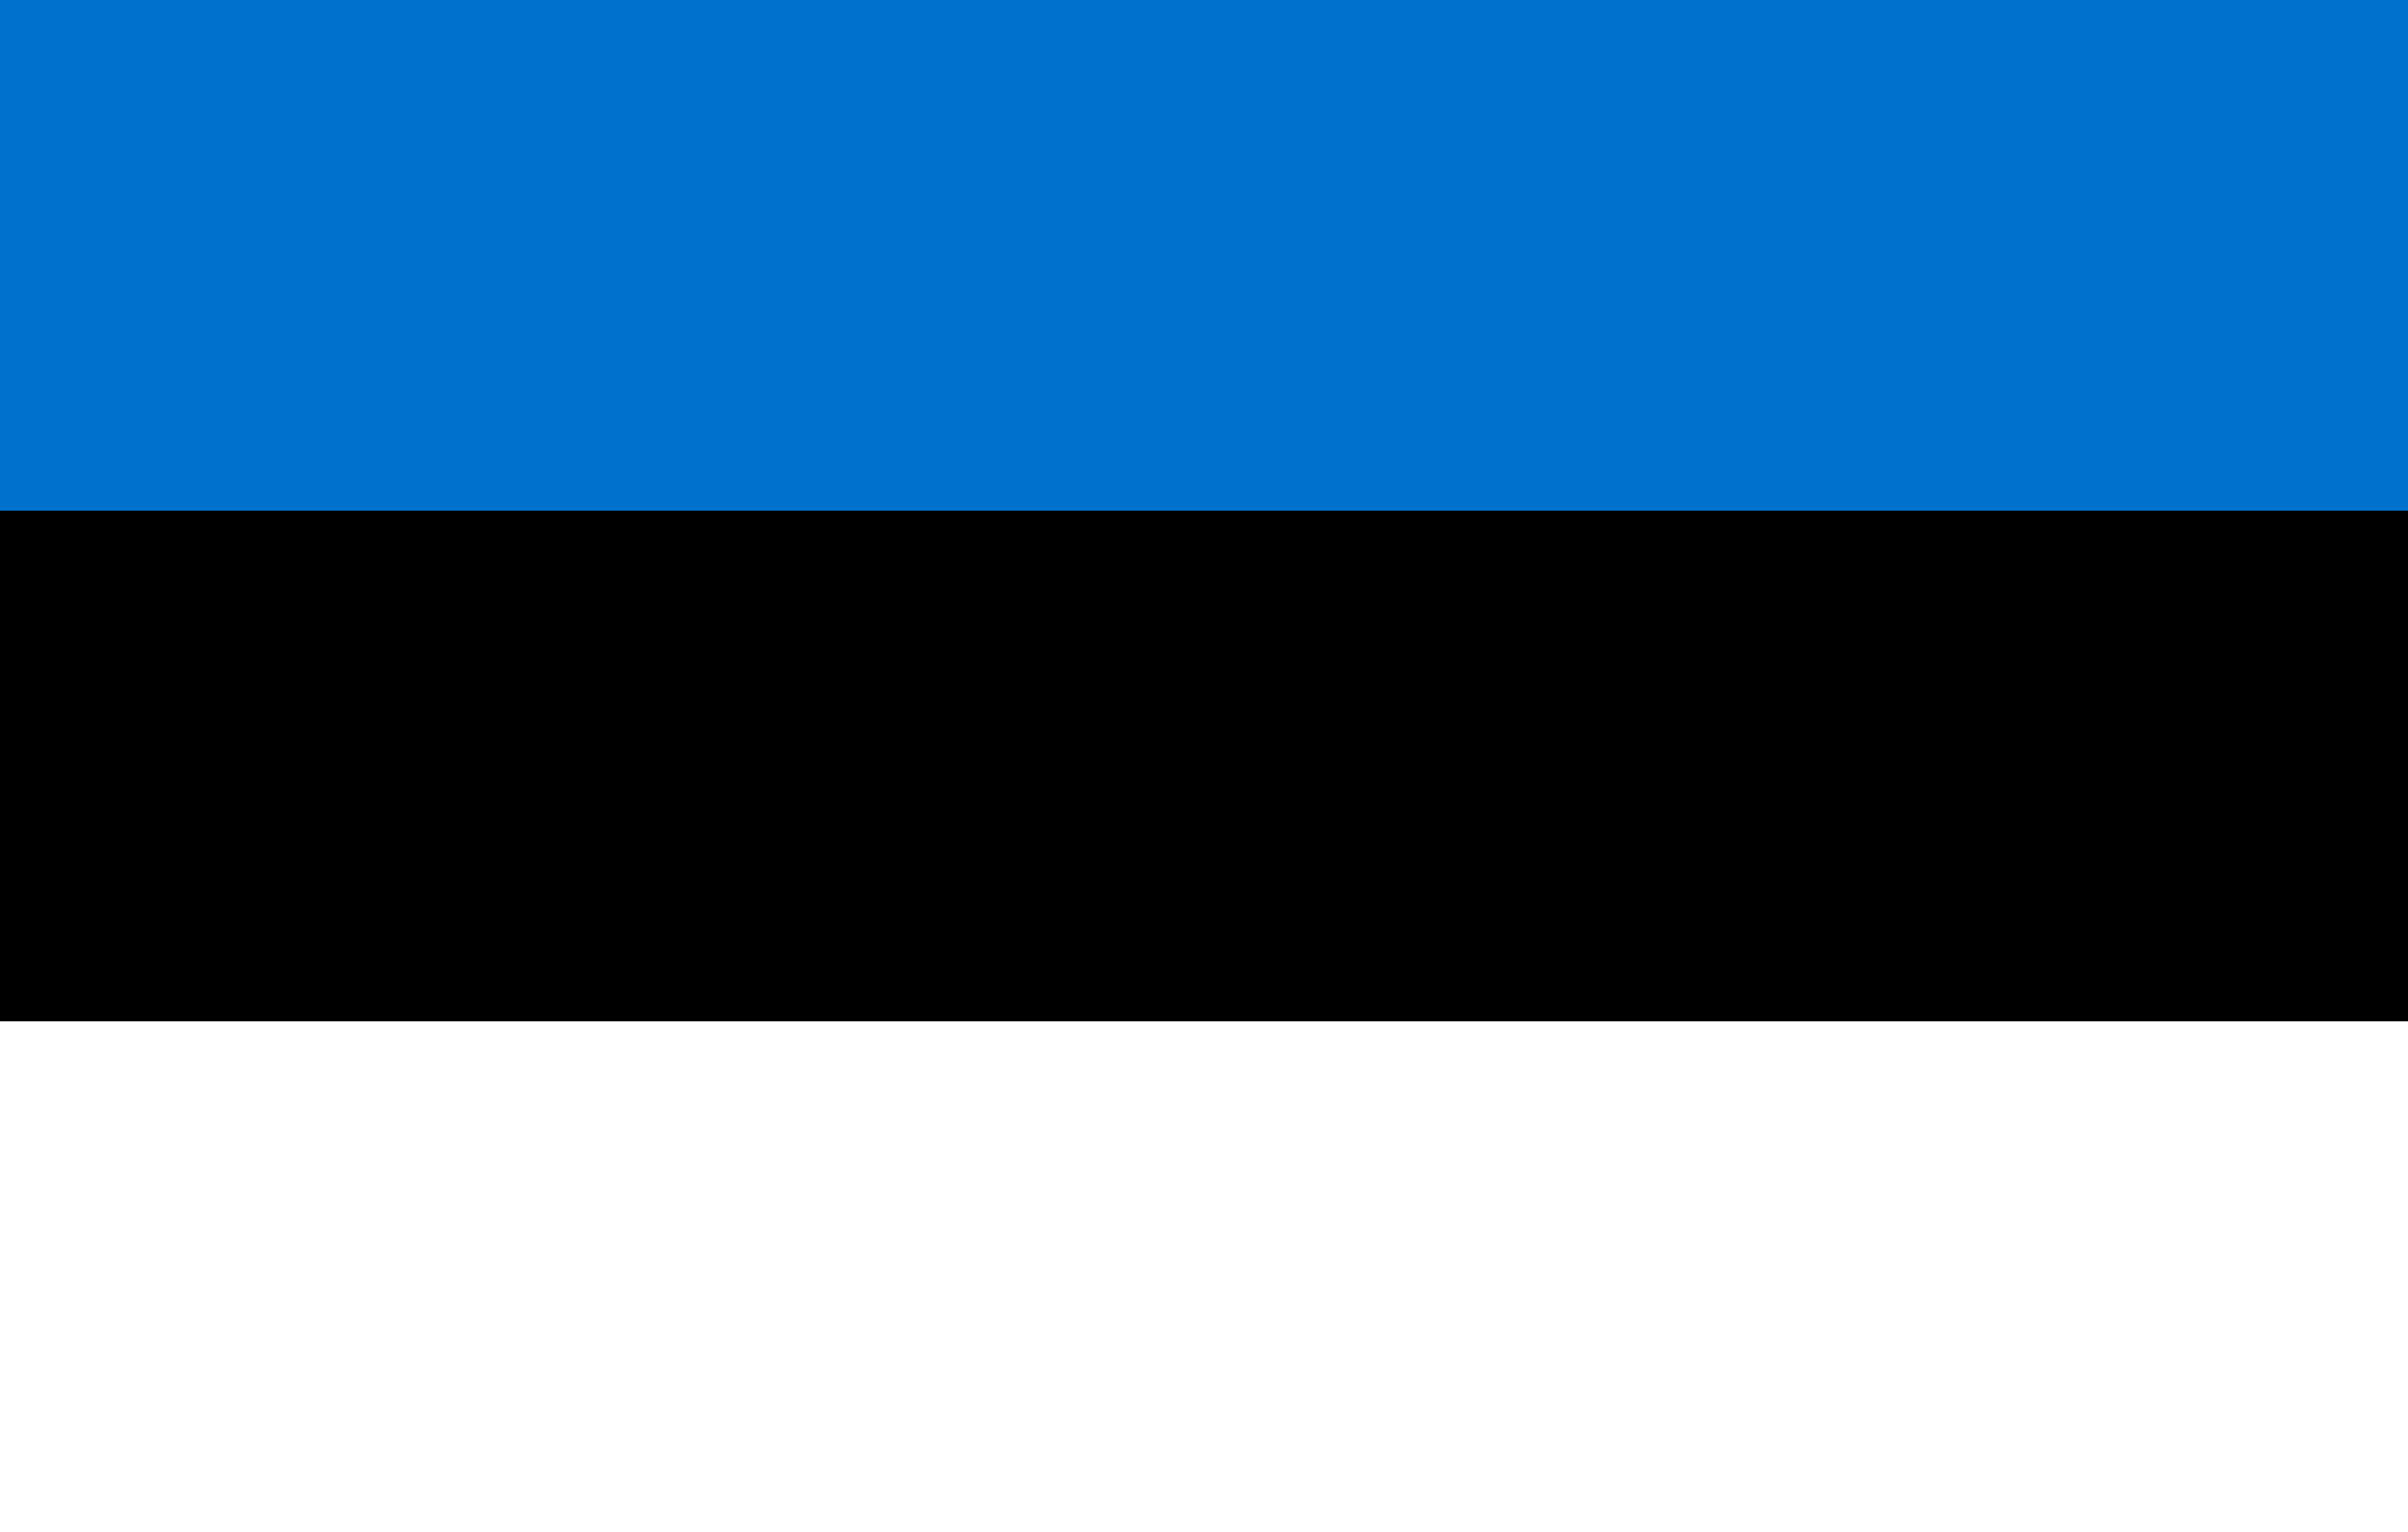 Flag of Republic of Estonia